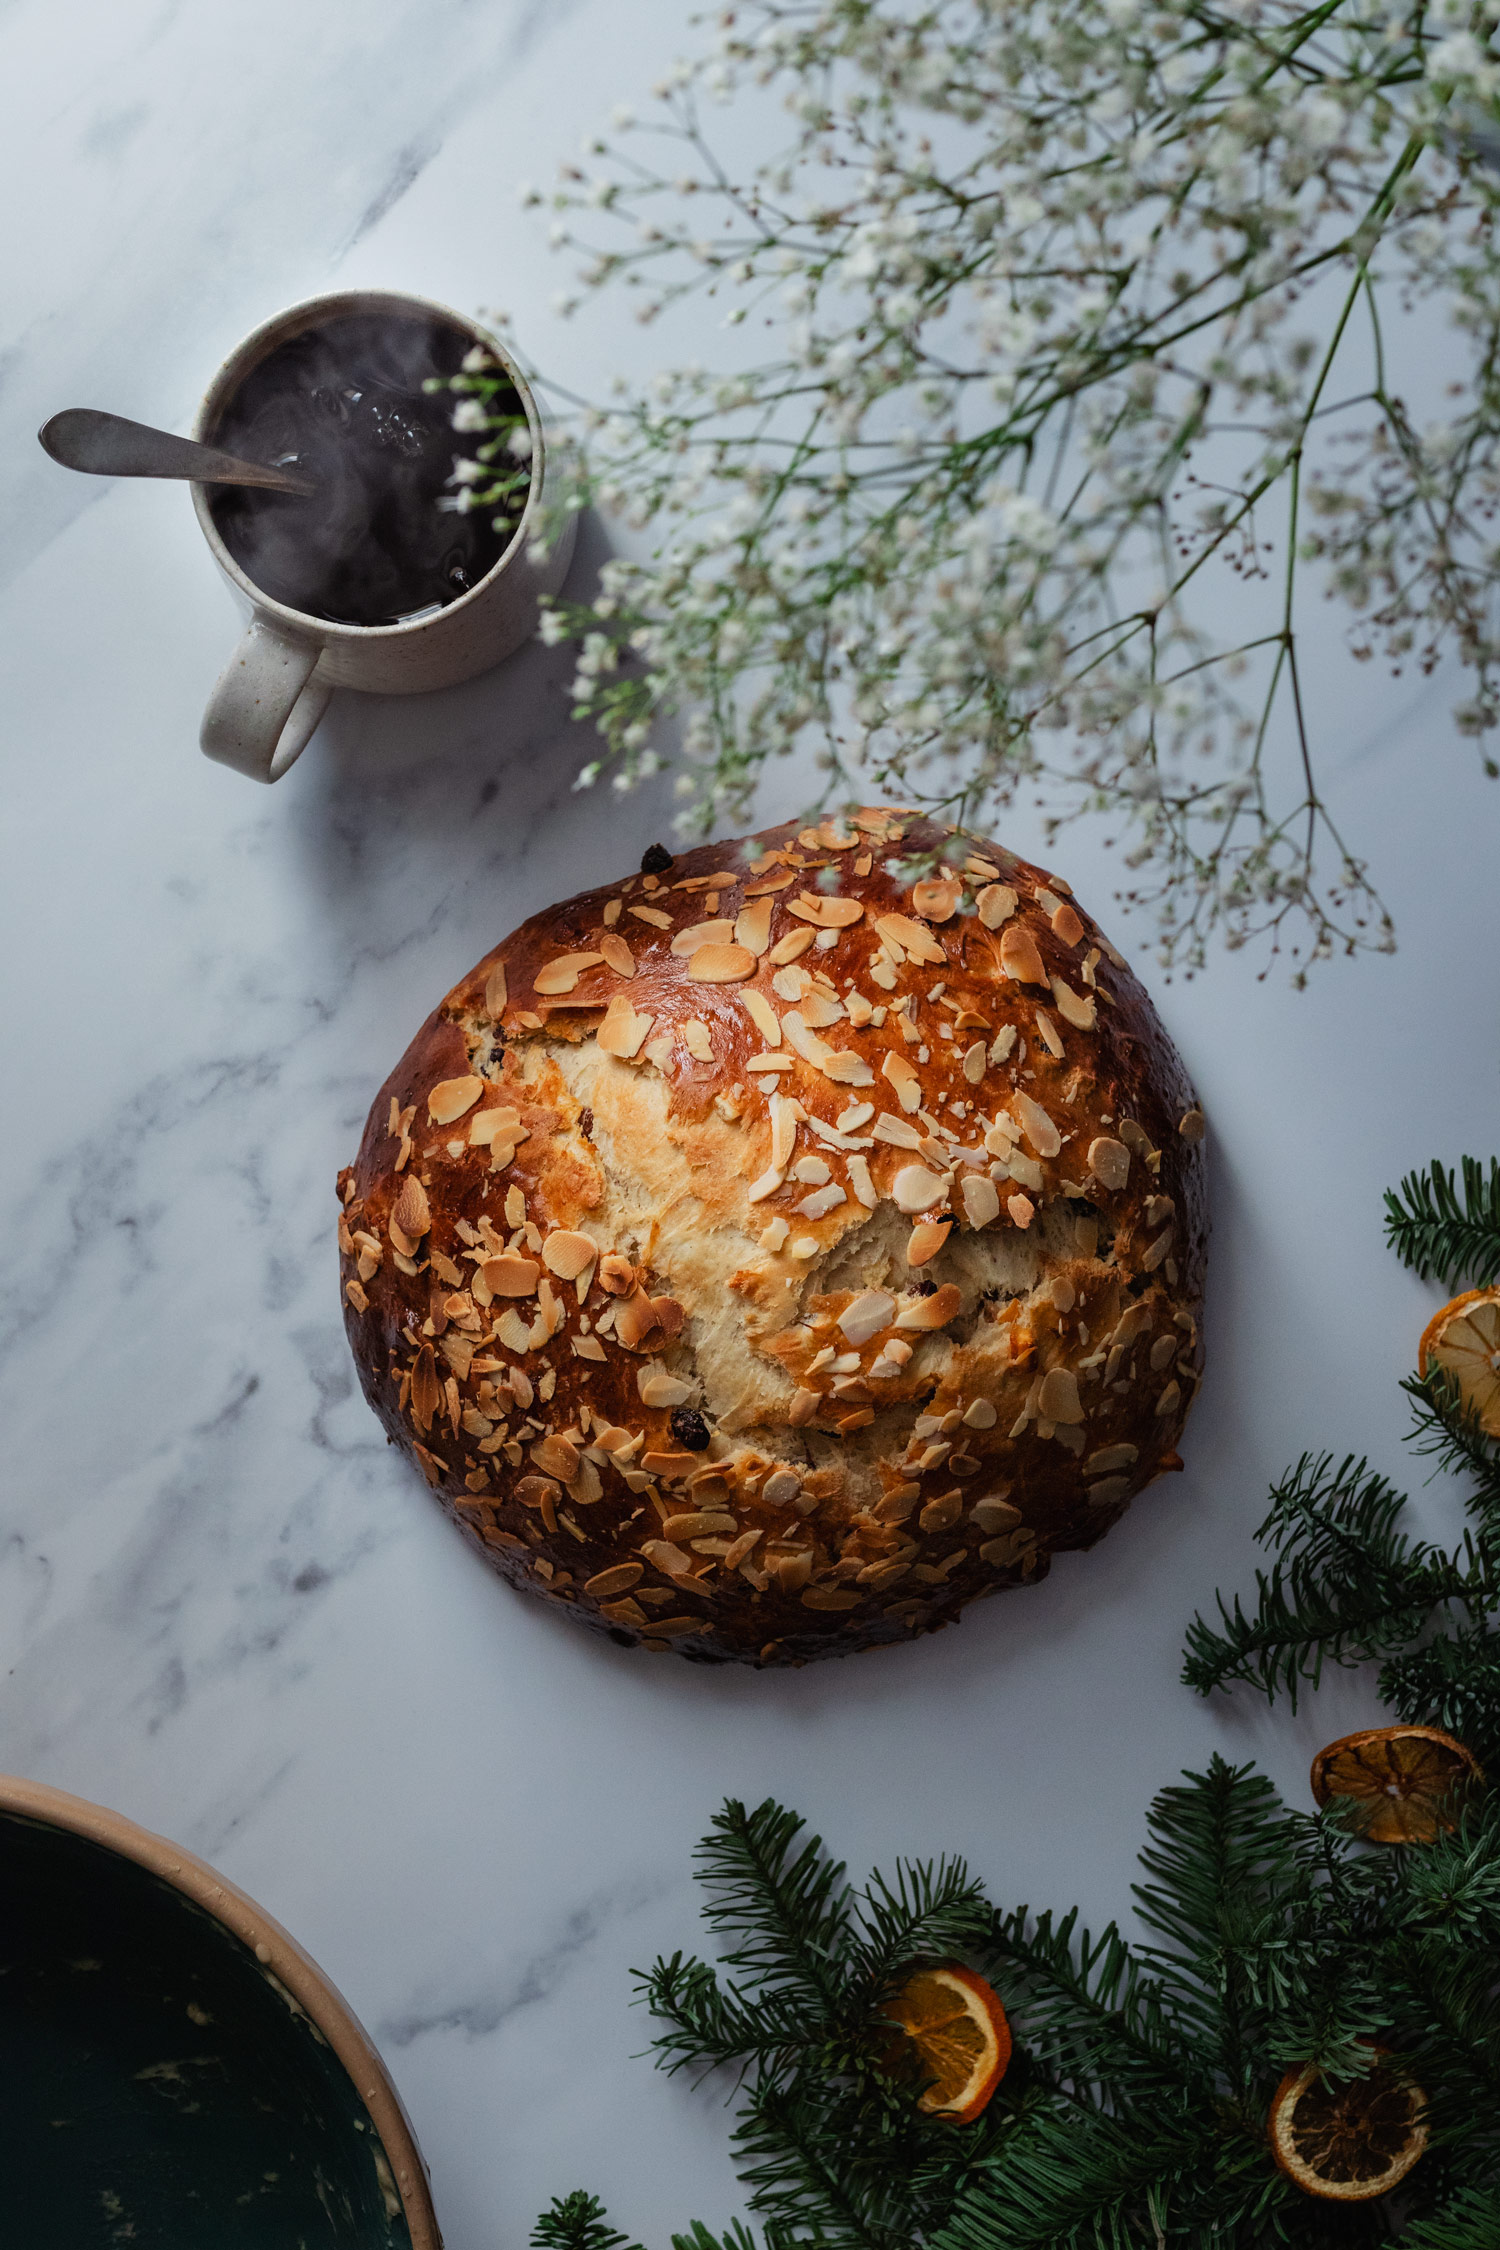 Julekake: Norwegian Christmas Bread | the Sunday Baker